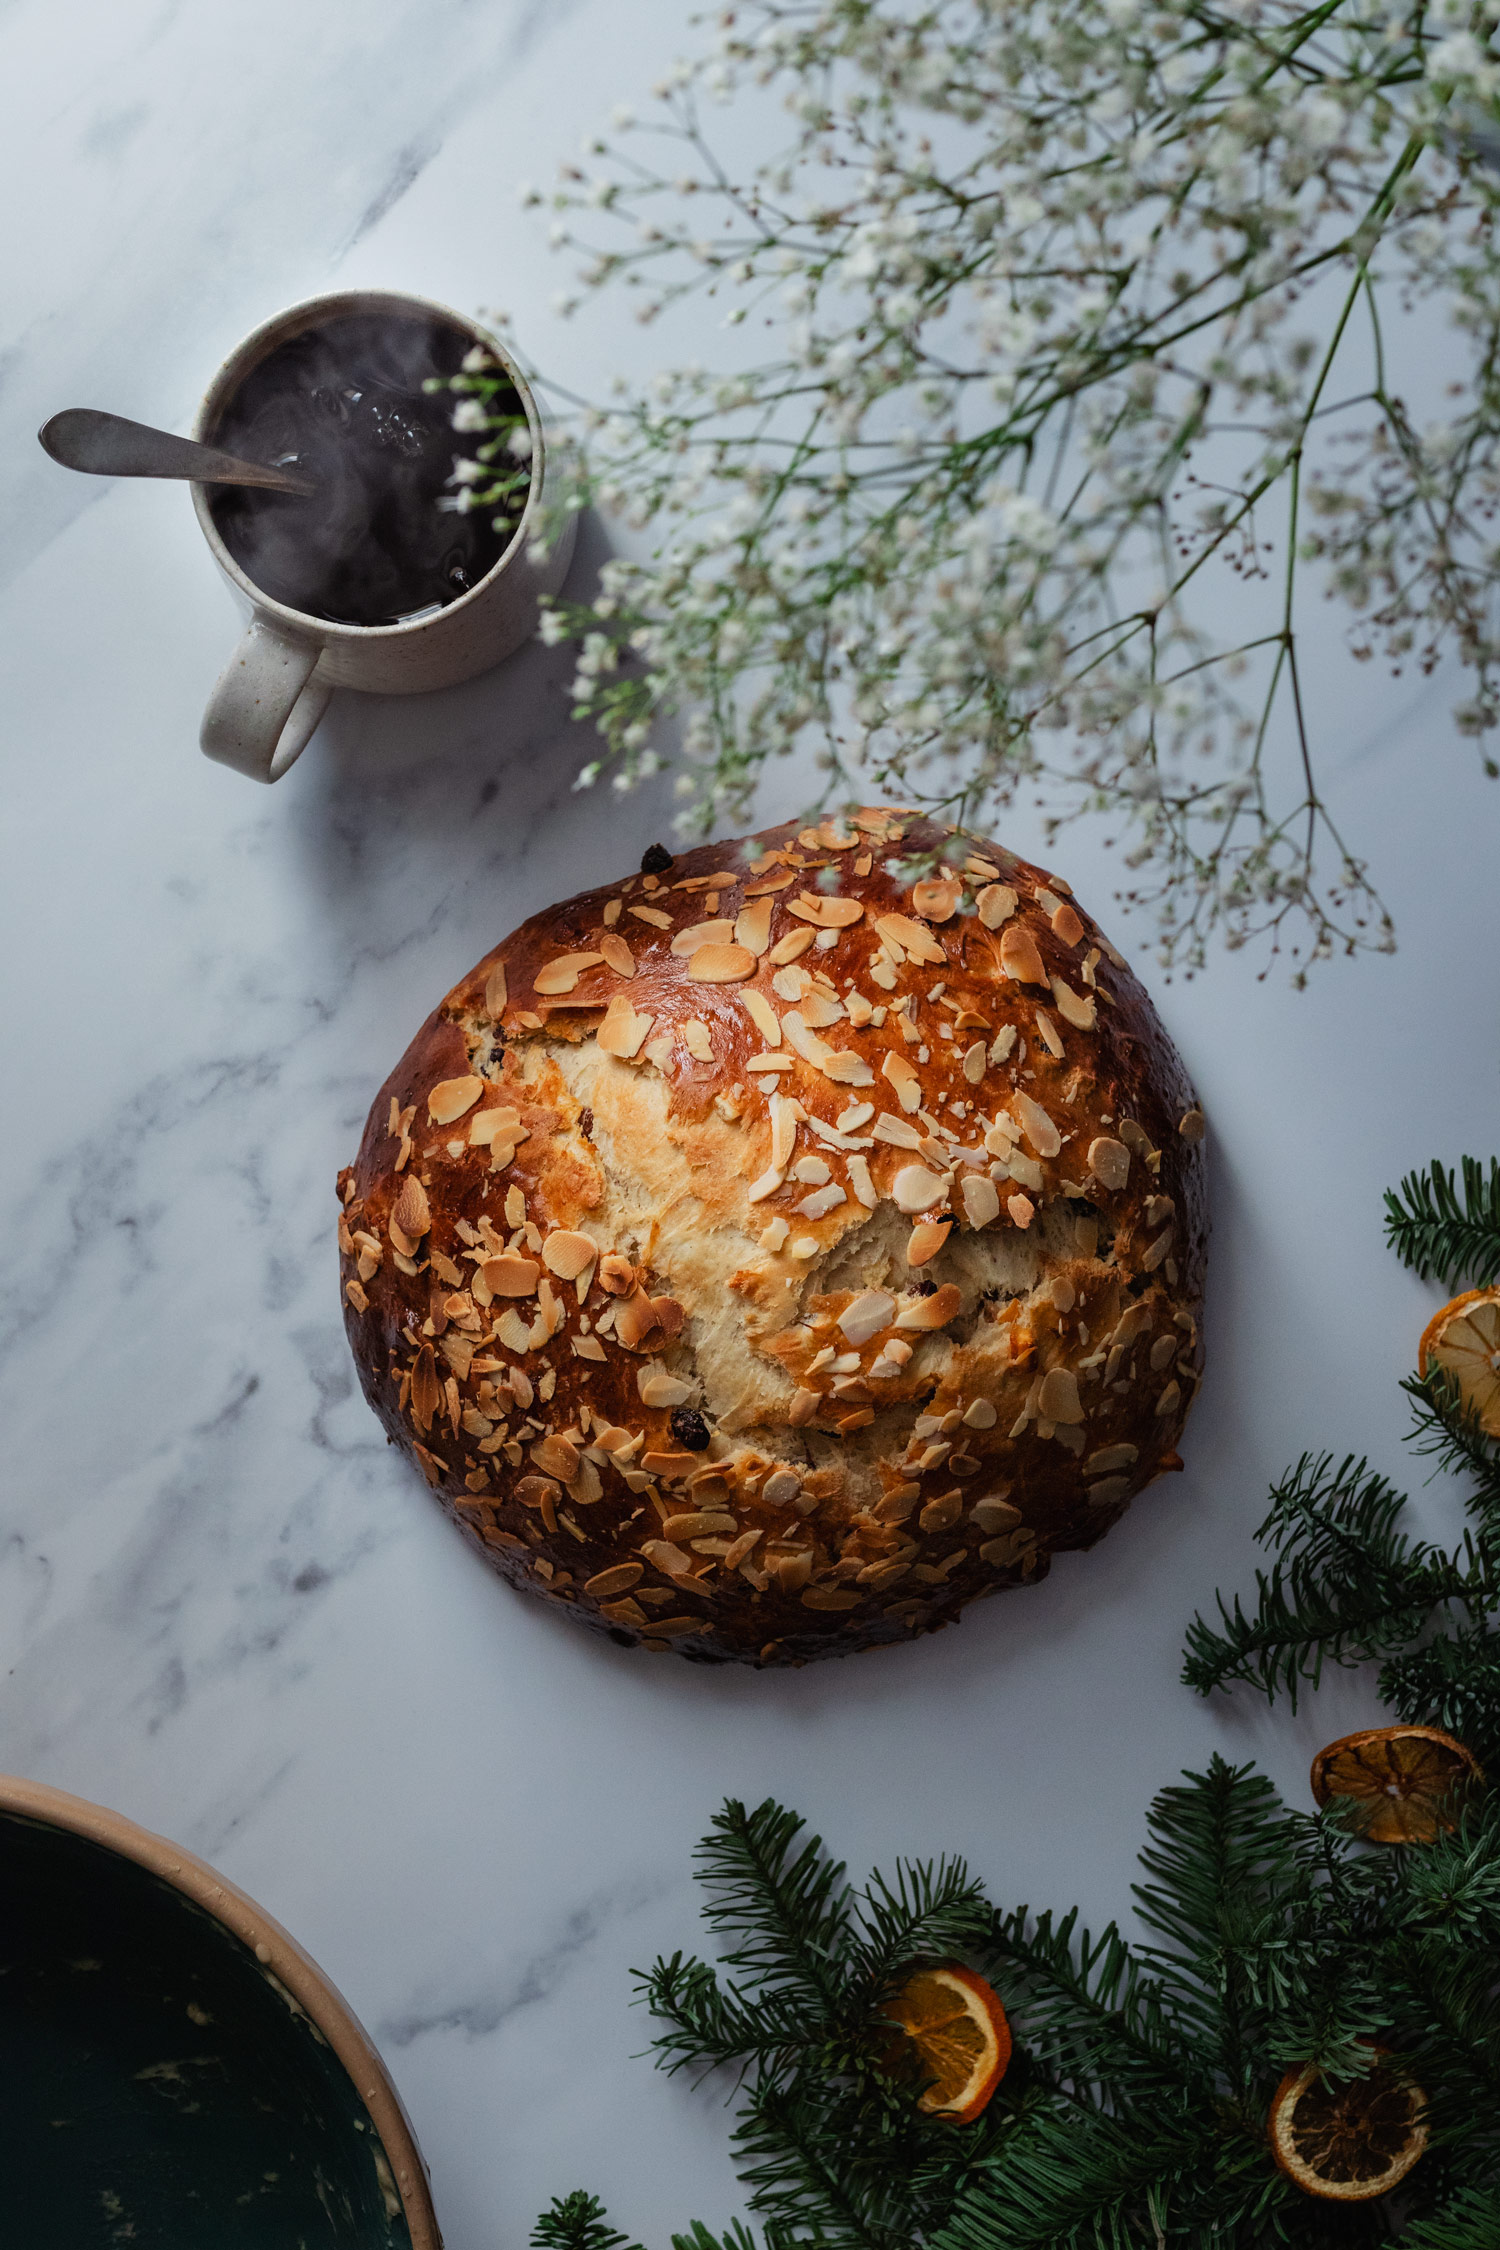 Julekake: Norwegian Christmas Bread | the Sunday Baker